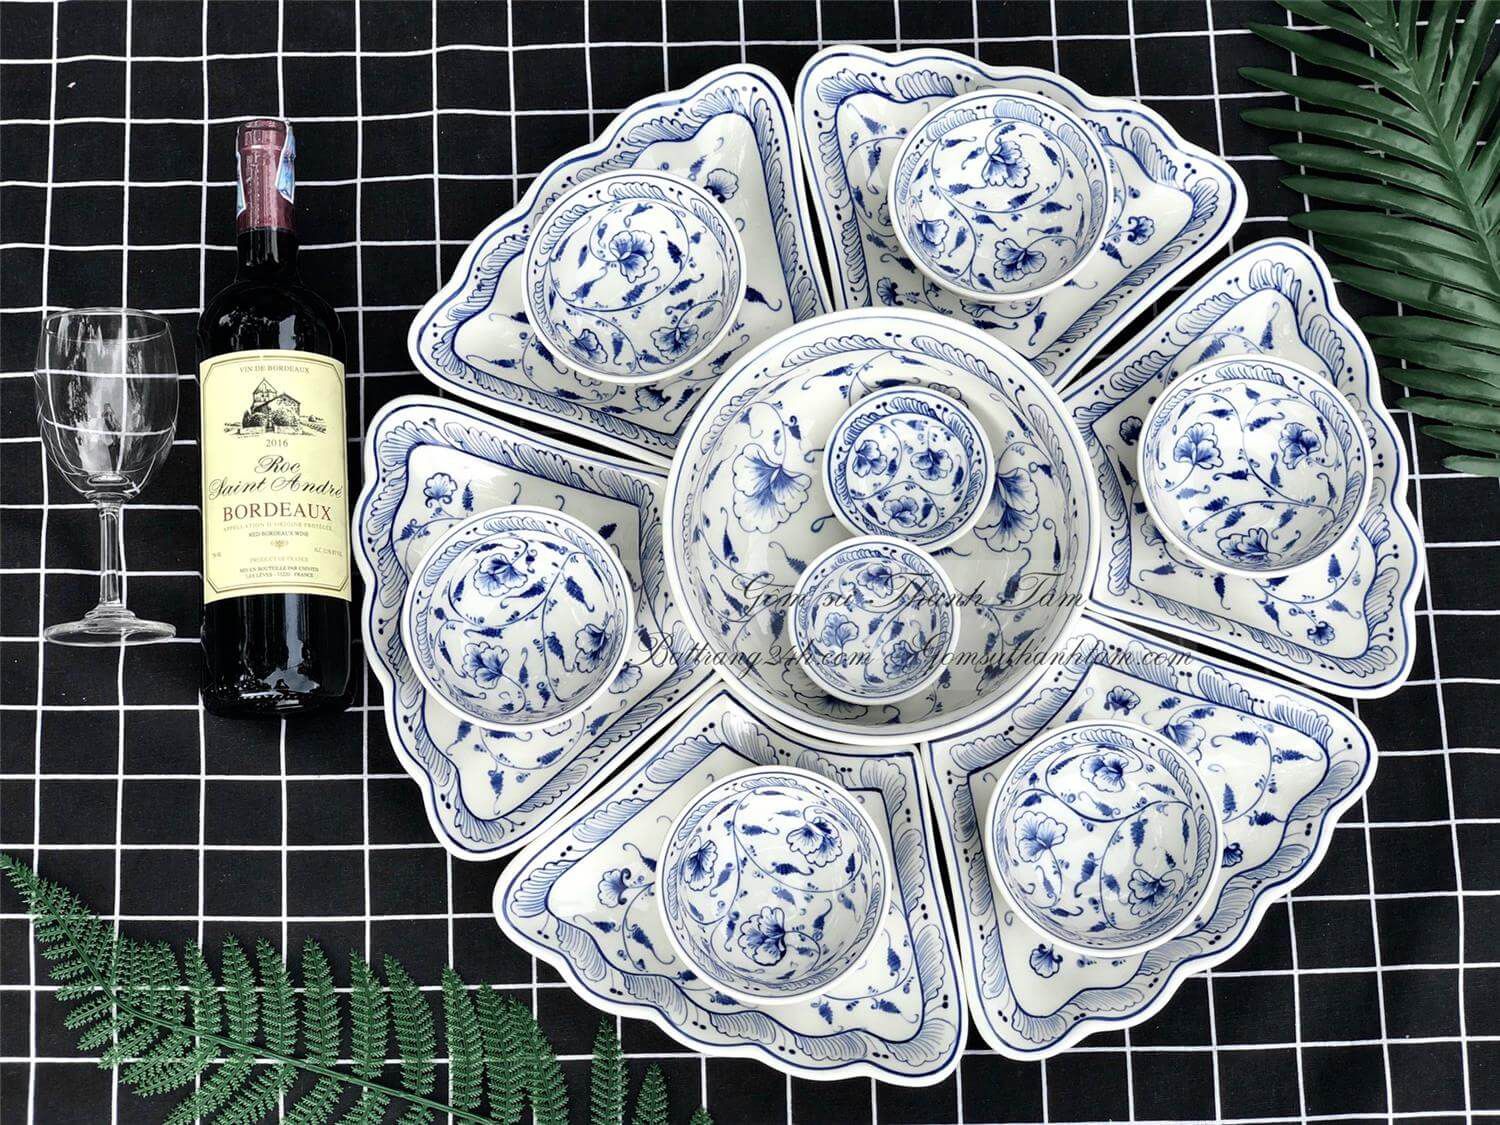 Bộ bát đĩa gốm sứ Bát Tràng đẹp giá rẻ bền tốt nhất, bộ bát đĩa mẫu hoa mặt trời 7 món chất lượng tốt nhất